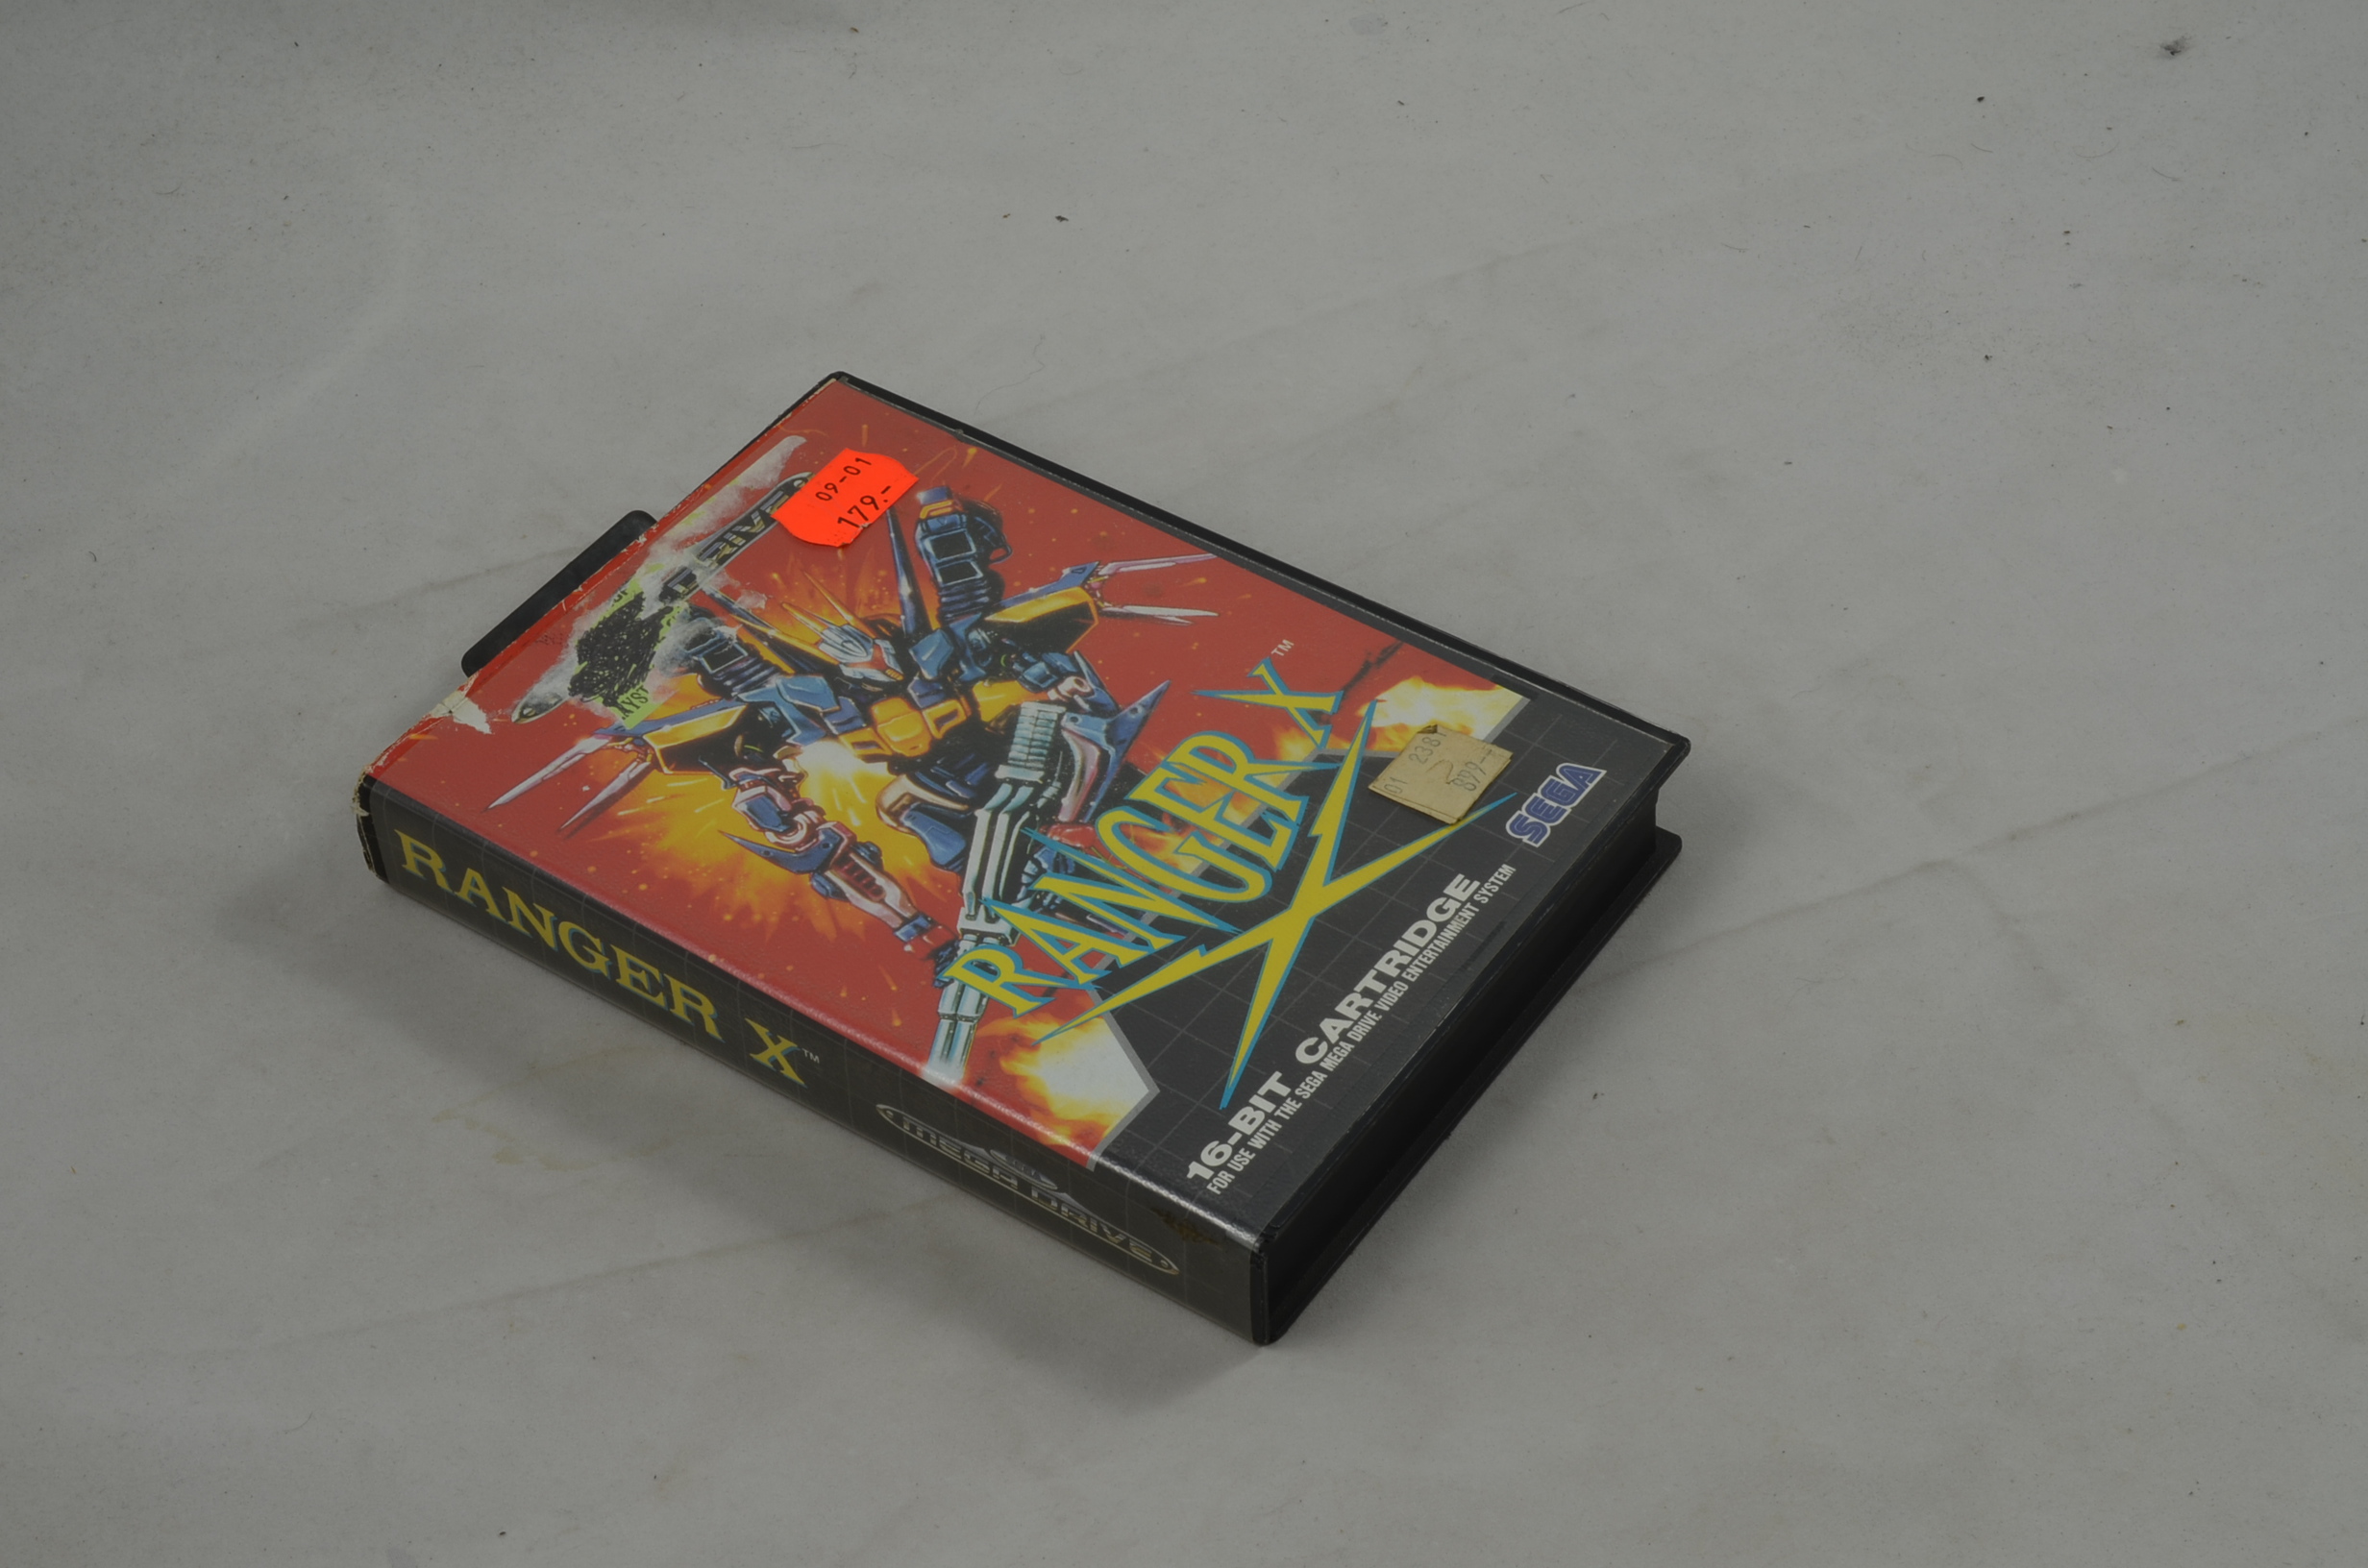 Produktbild von Ranger X Sega Mega Drive Spiel CB